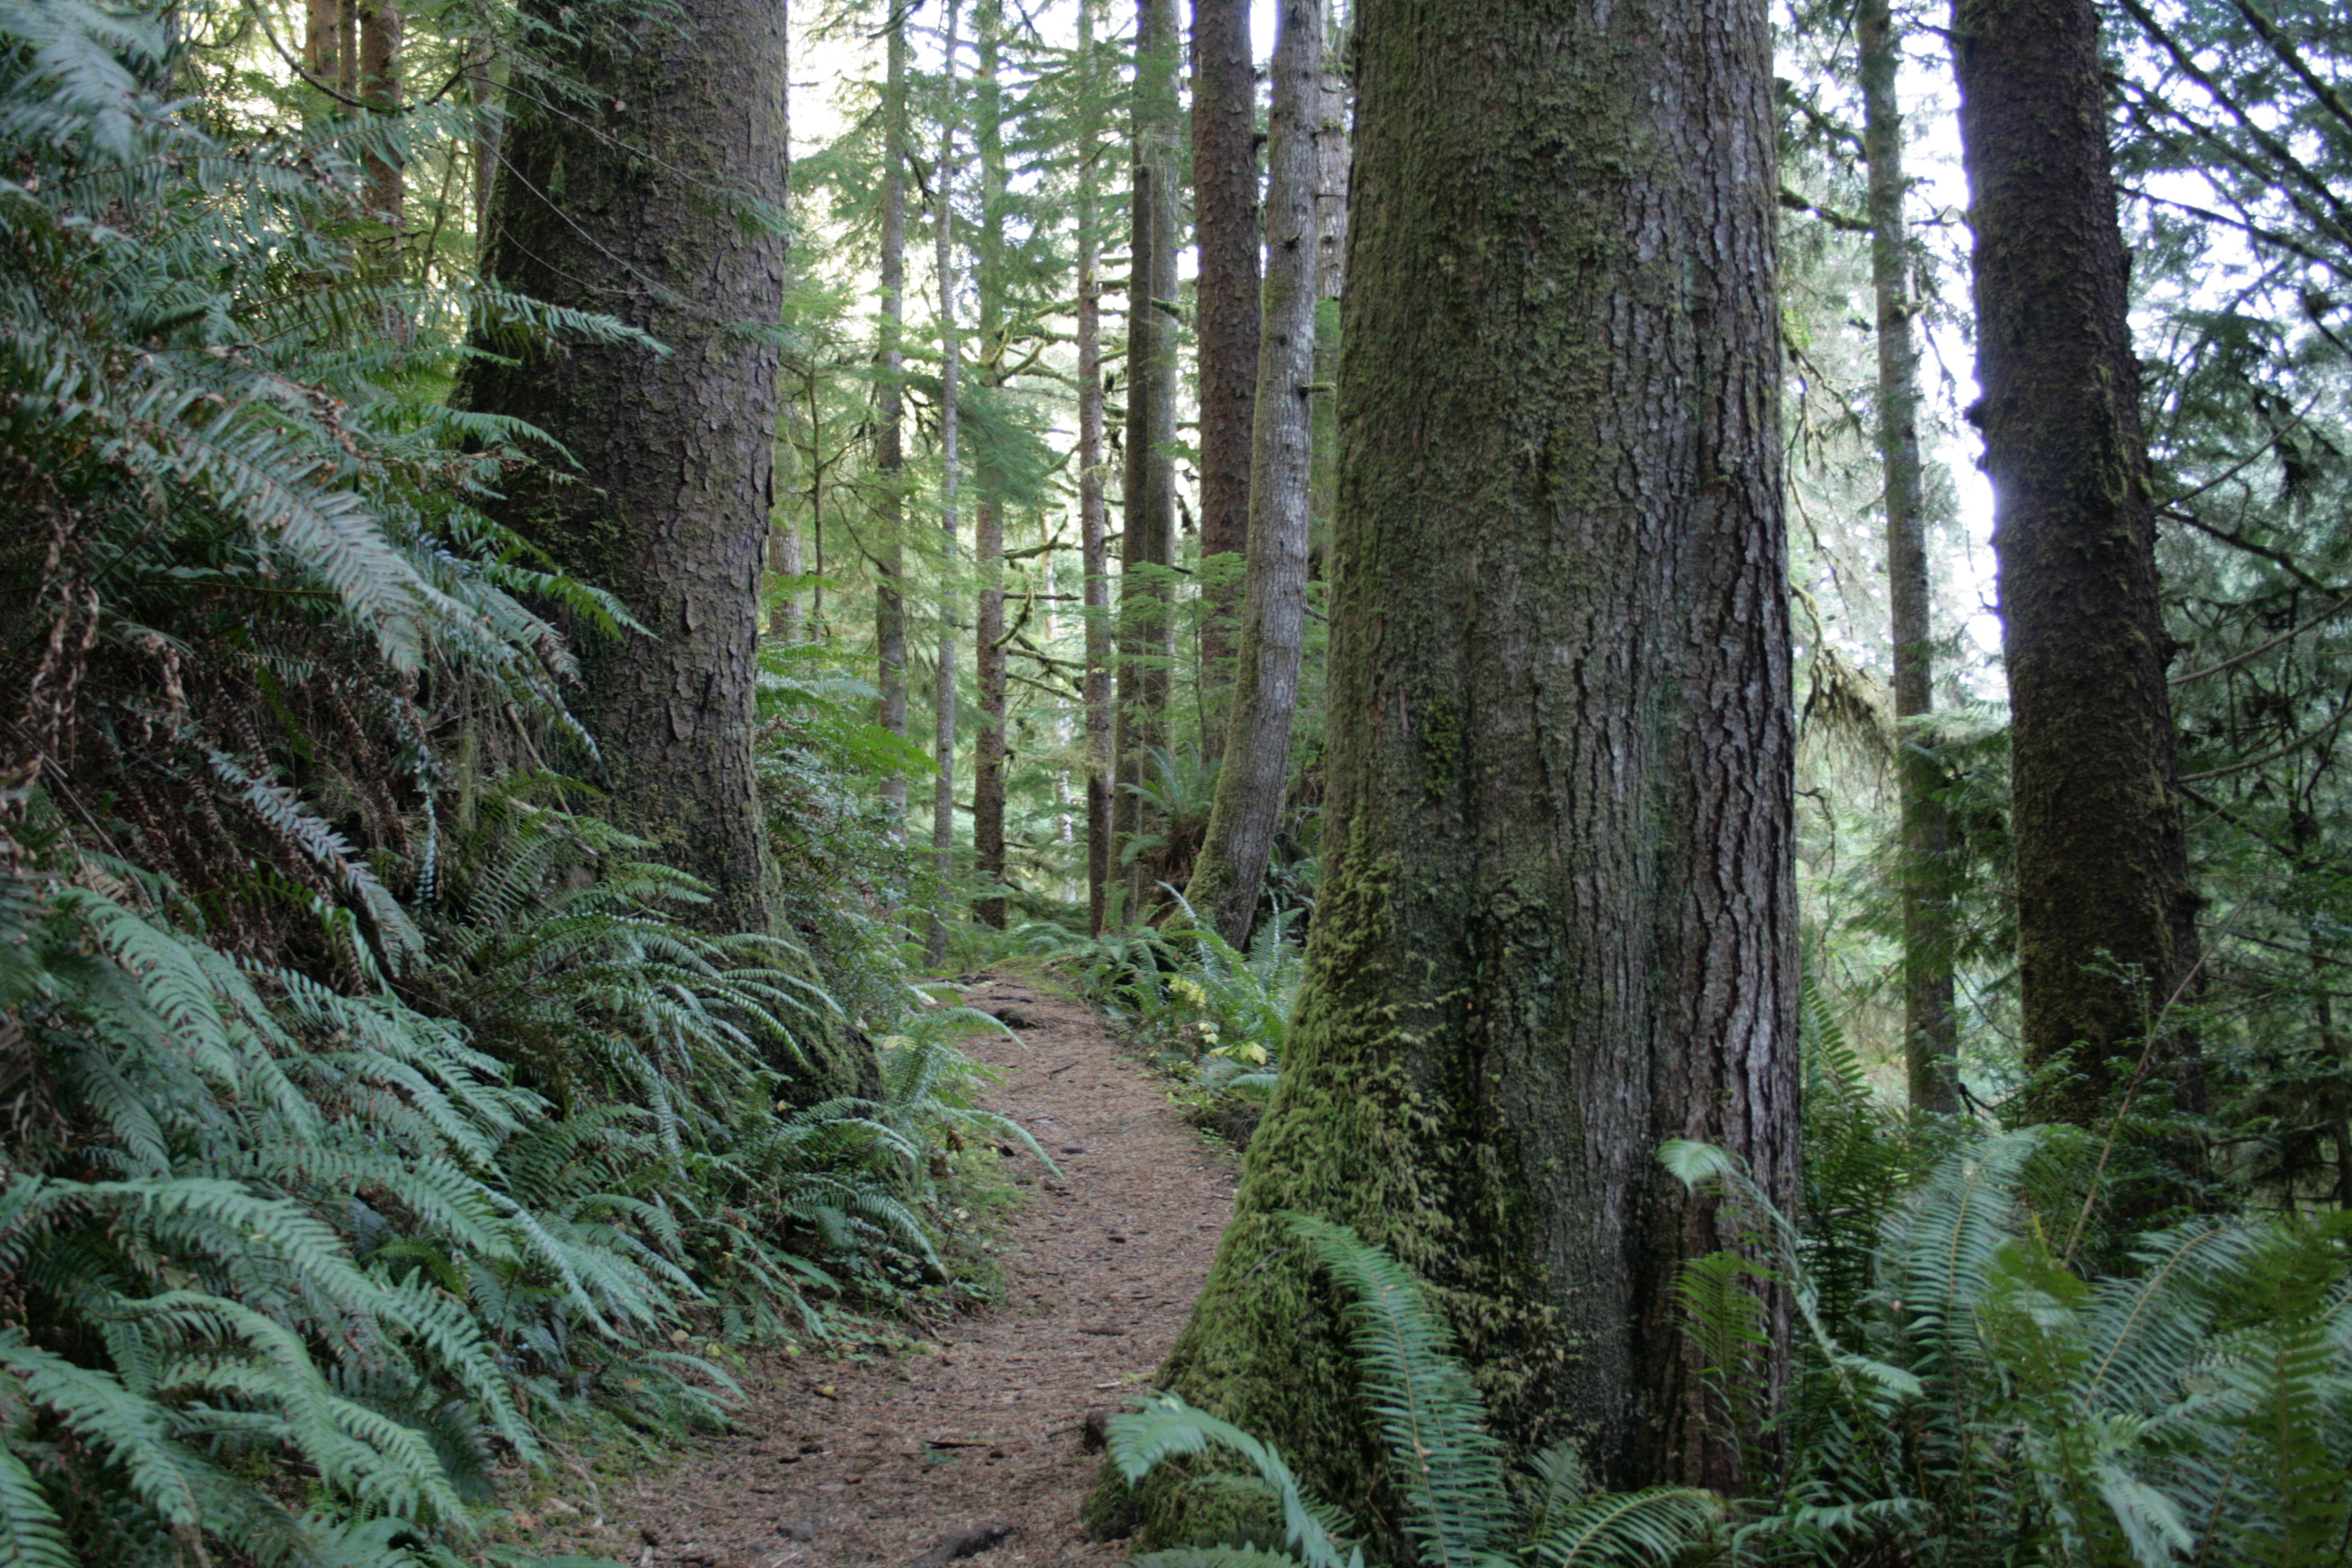 The Gwynn Creek Trail on the Oregon Coast